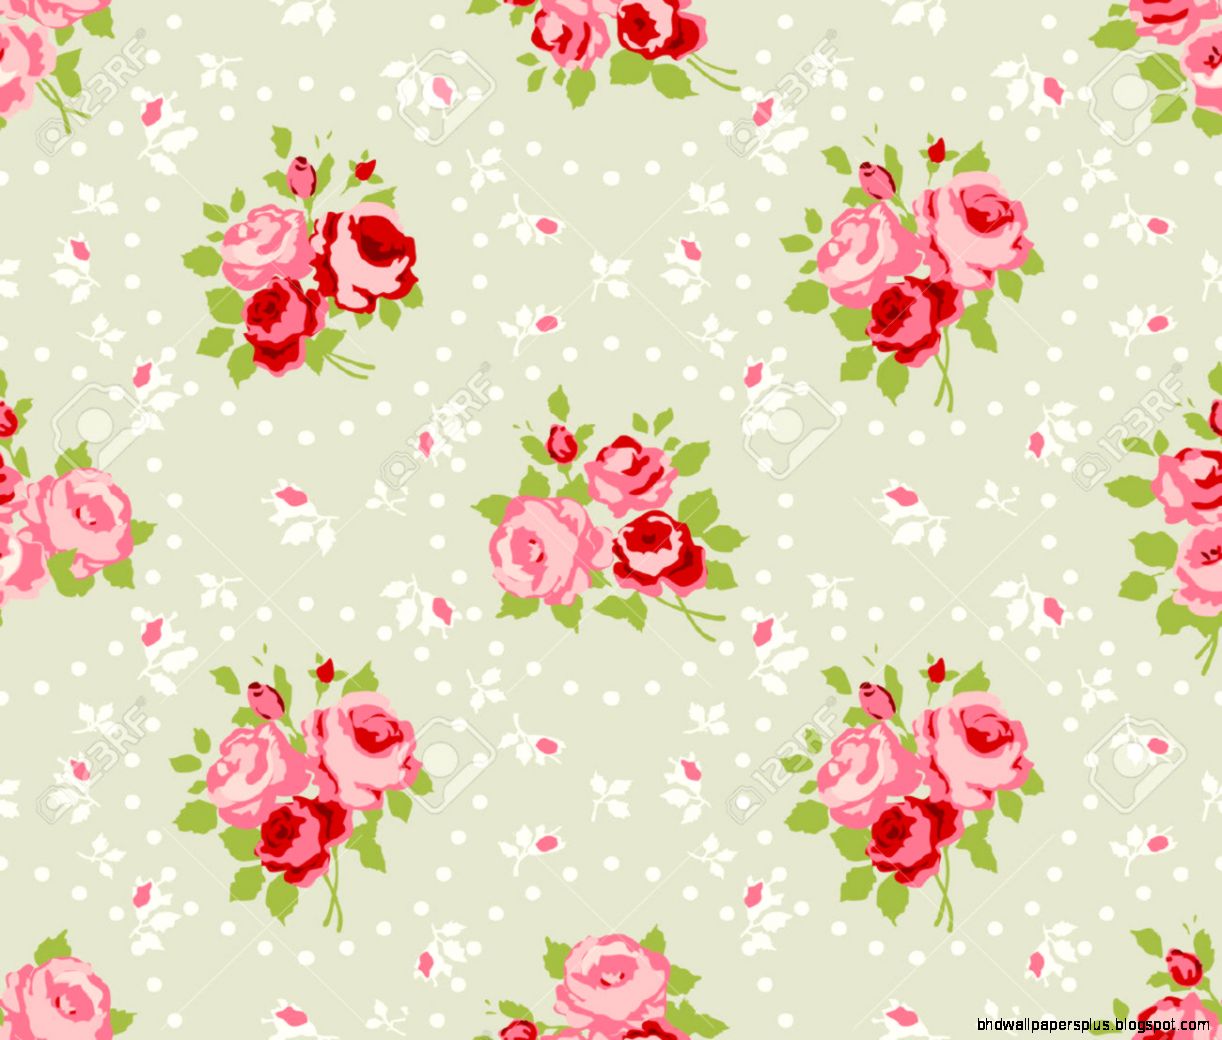 세련된 벽지,분홍,무늬,꽃 무늬 디자인,벽지,꽃